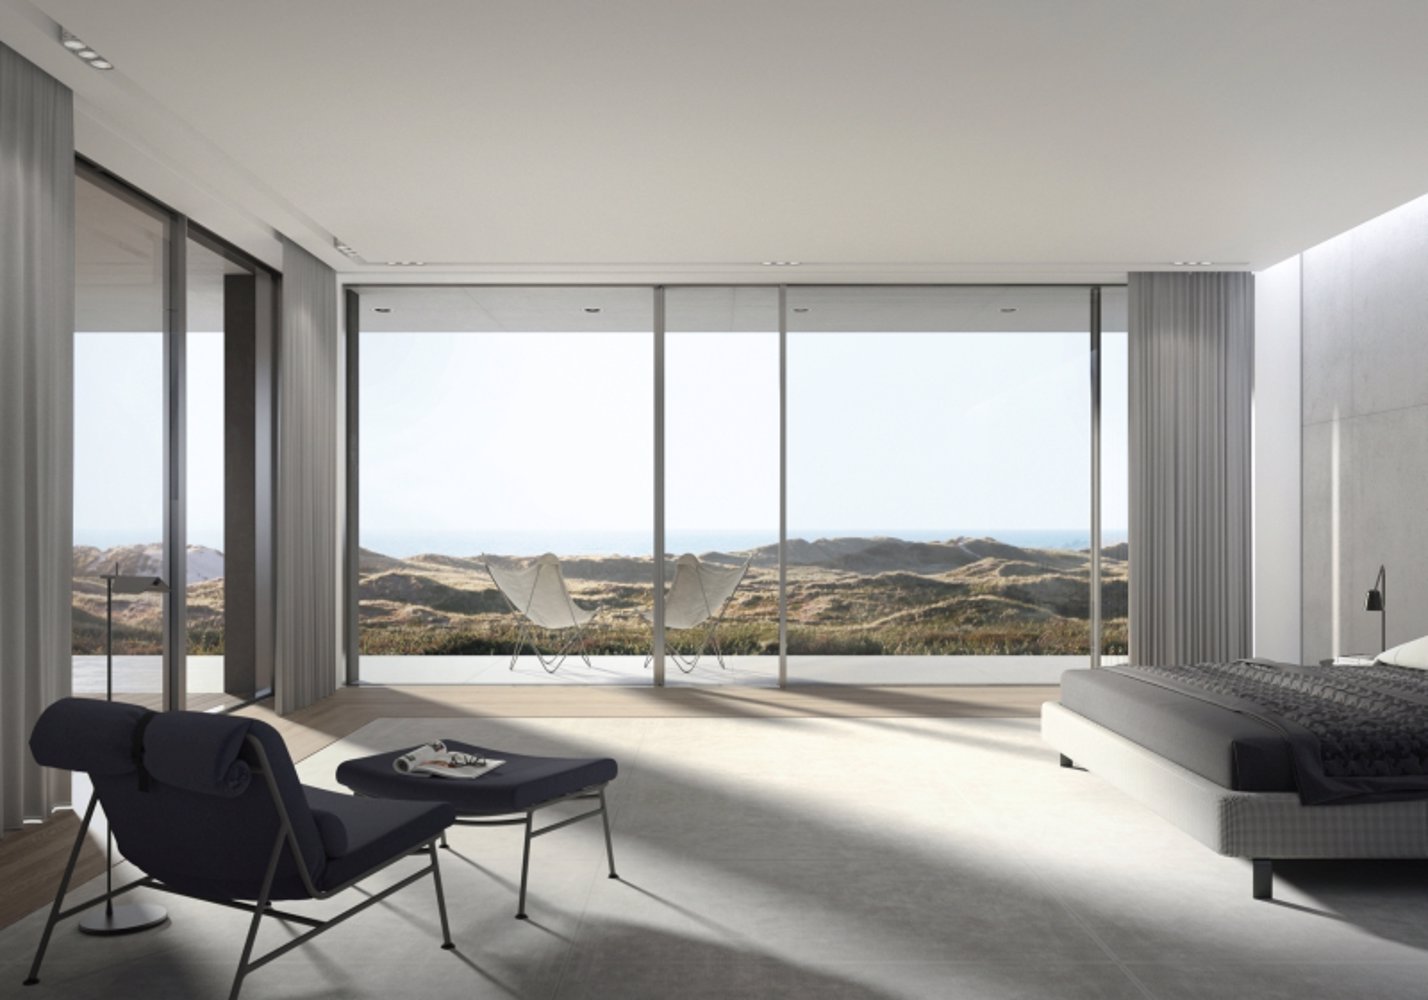 Nowa generacja okien przesuwnych od Awilux
– ekskluzywny design panoramicznego przeszklenia 
